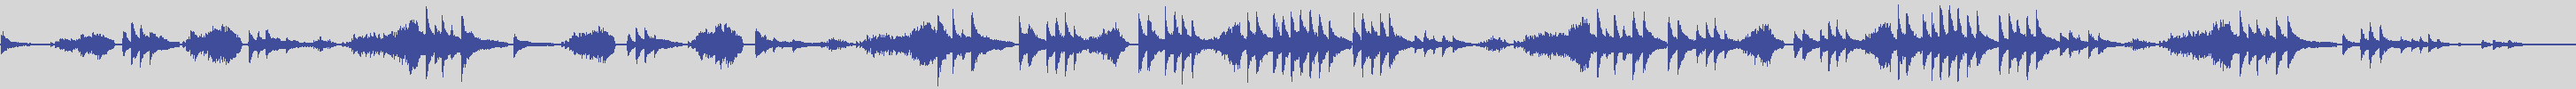 big_music_classic [BMC005] Erik Satie, Corrado Rossi - Sarabande N.3 [] audio wave form